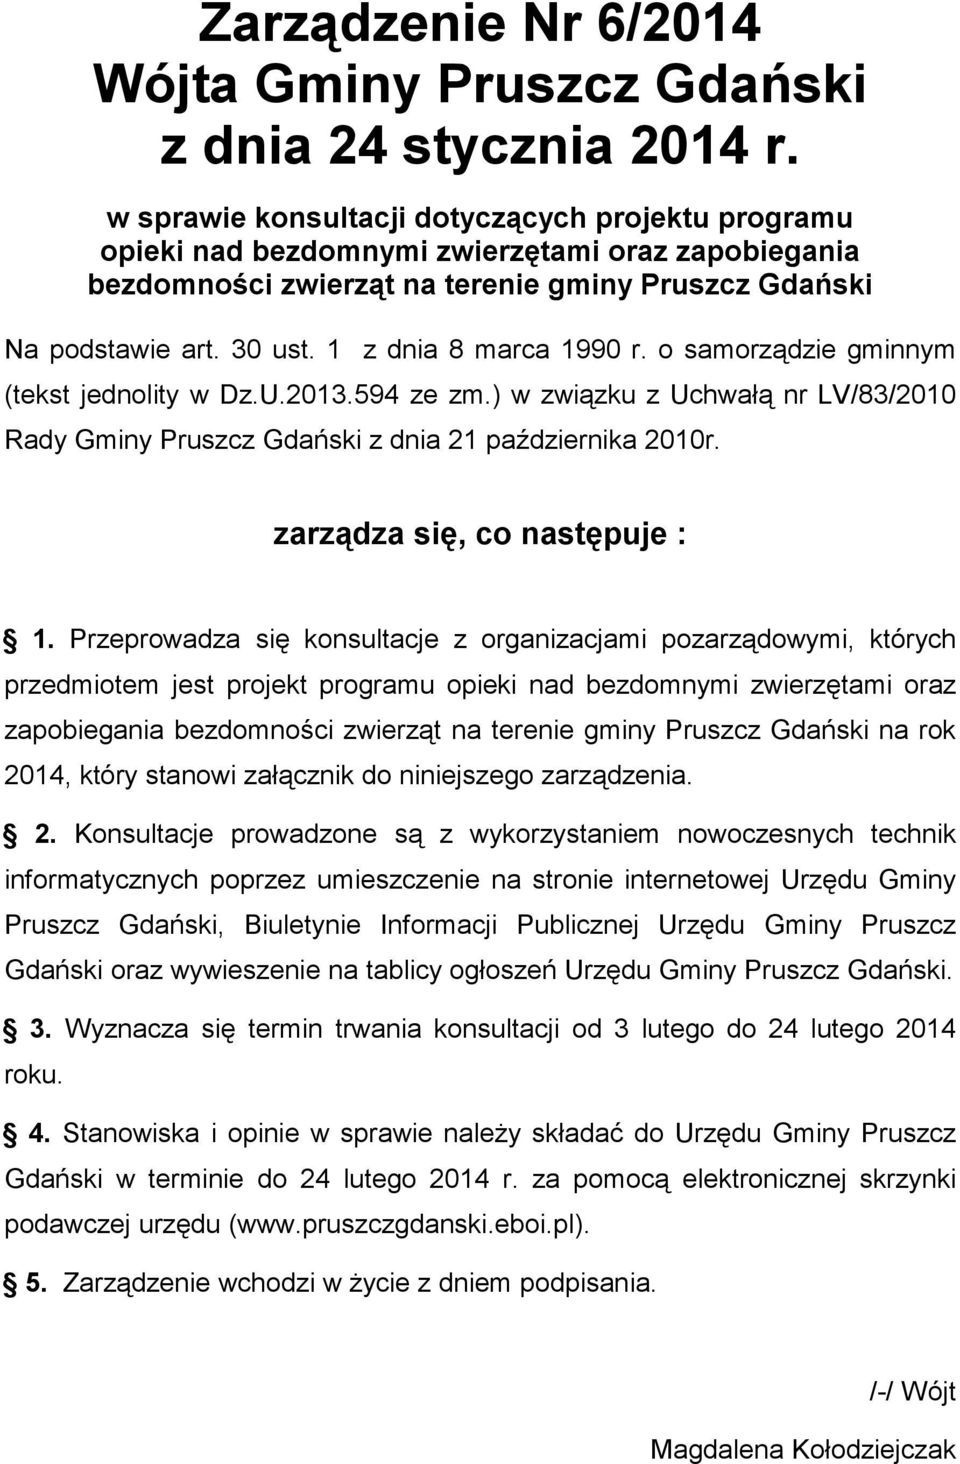 1 z dnia 8 marca 1990 r. o samorządzie gminnym (tekst jednolity w Dz.U.2013.594 ze zm.) w związku z Uchwałą nr LV/83/2010 Rady Gminy Pruszcz Gdański z dnia 21 października 2010r.